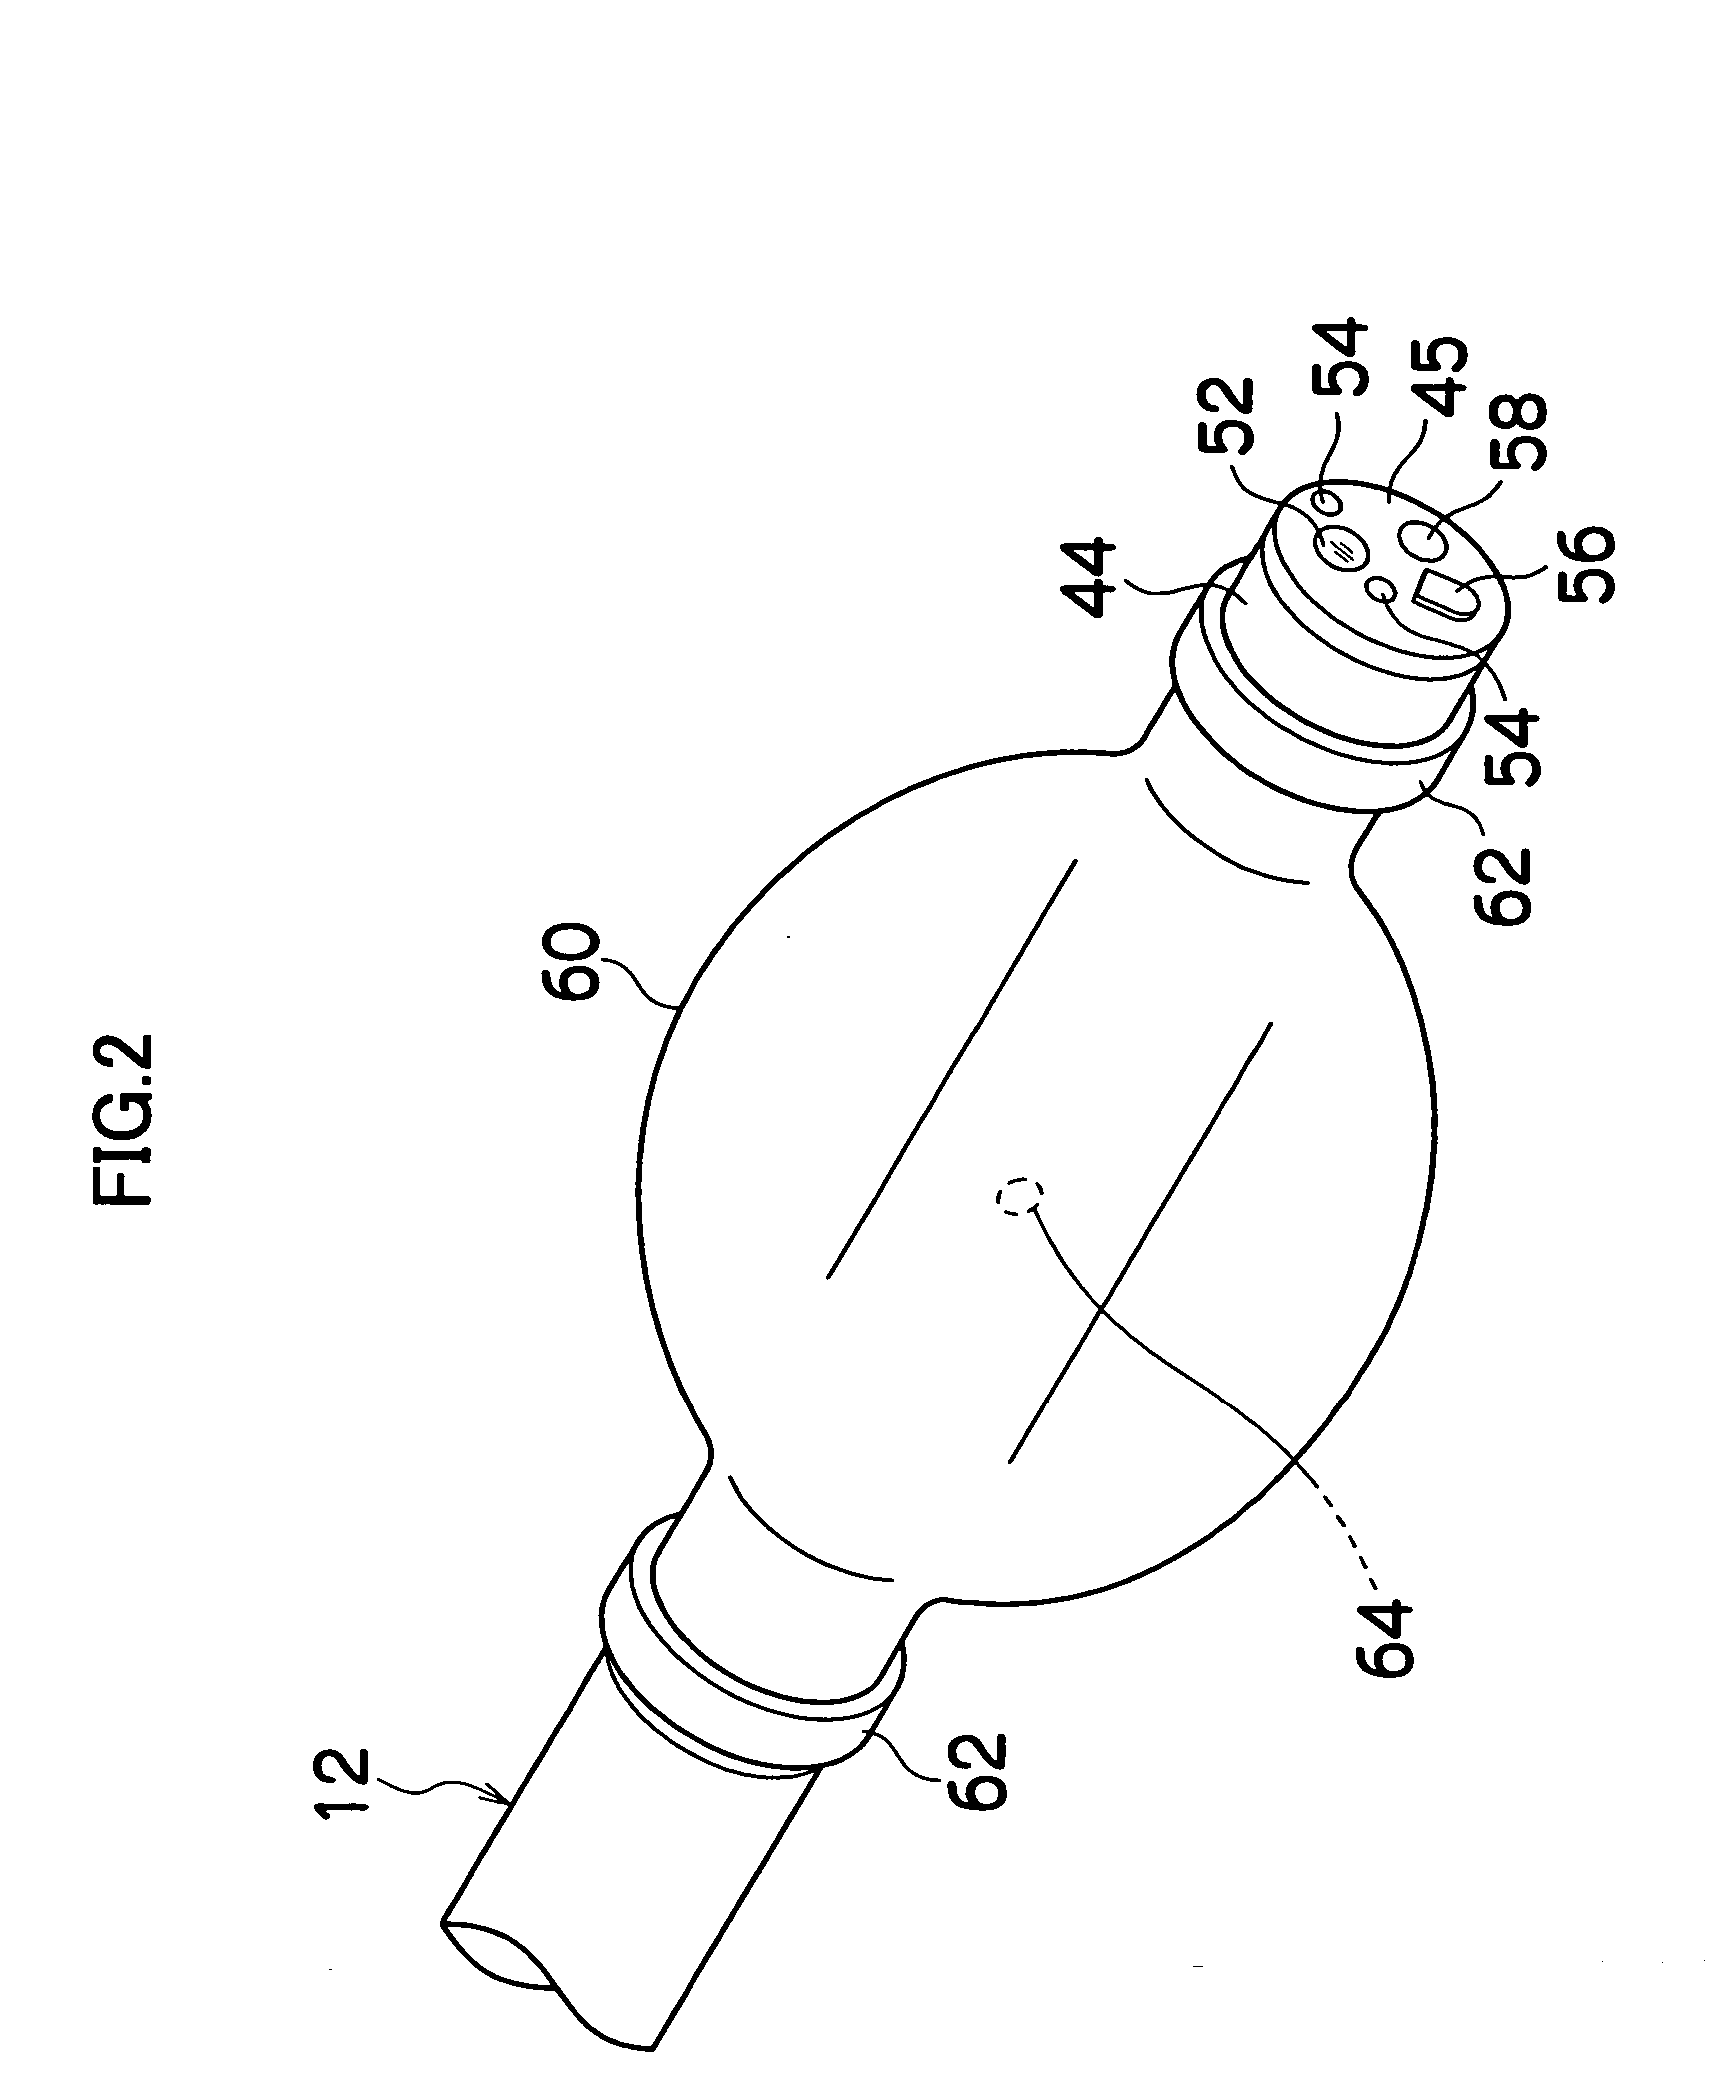 Balloon control device for endoscopic apparatus